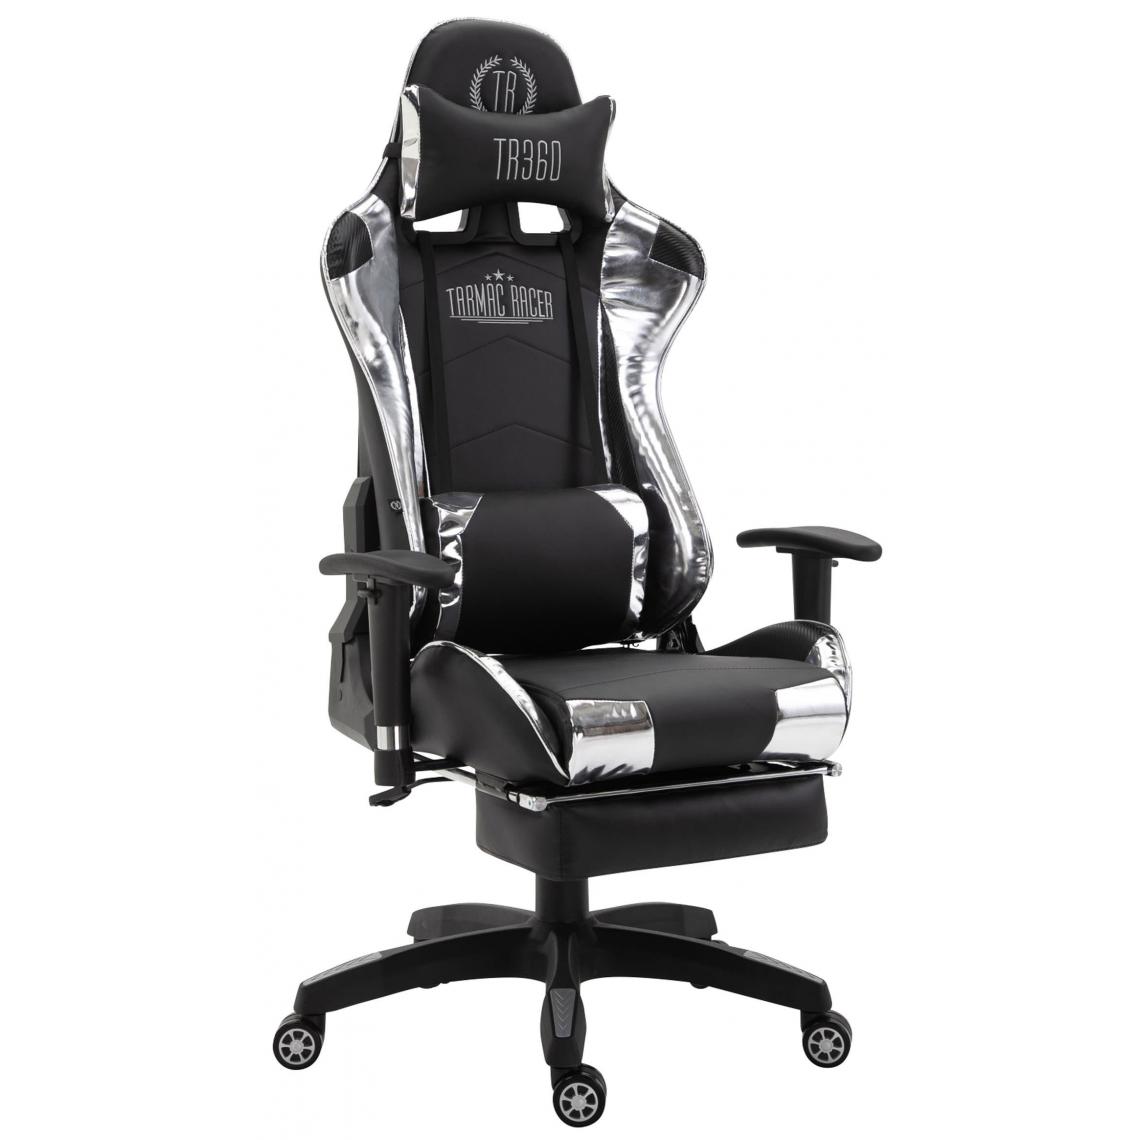 Icaverne - Admirable Chaise de bureau reference Luanda Turbo avec repose-pieds brillant couleur noir et blanc - Chaises